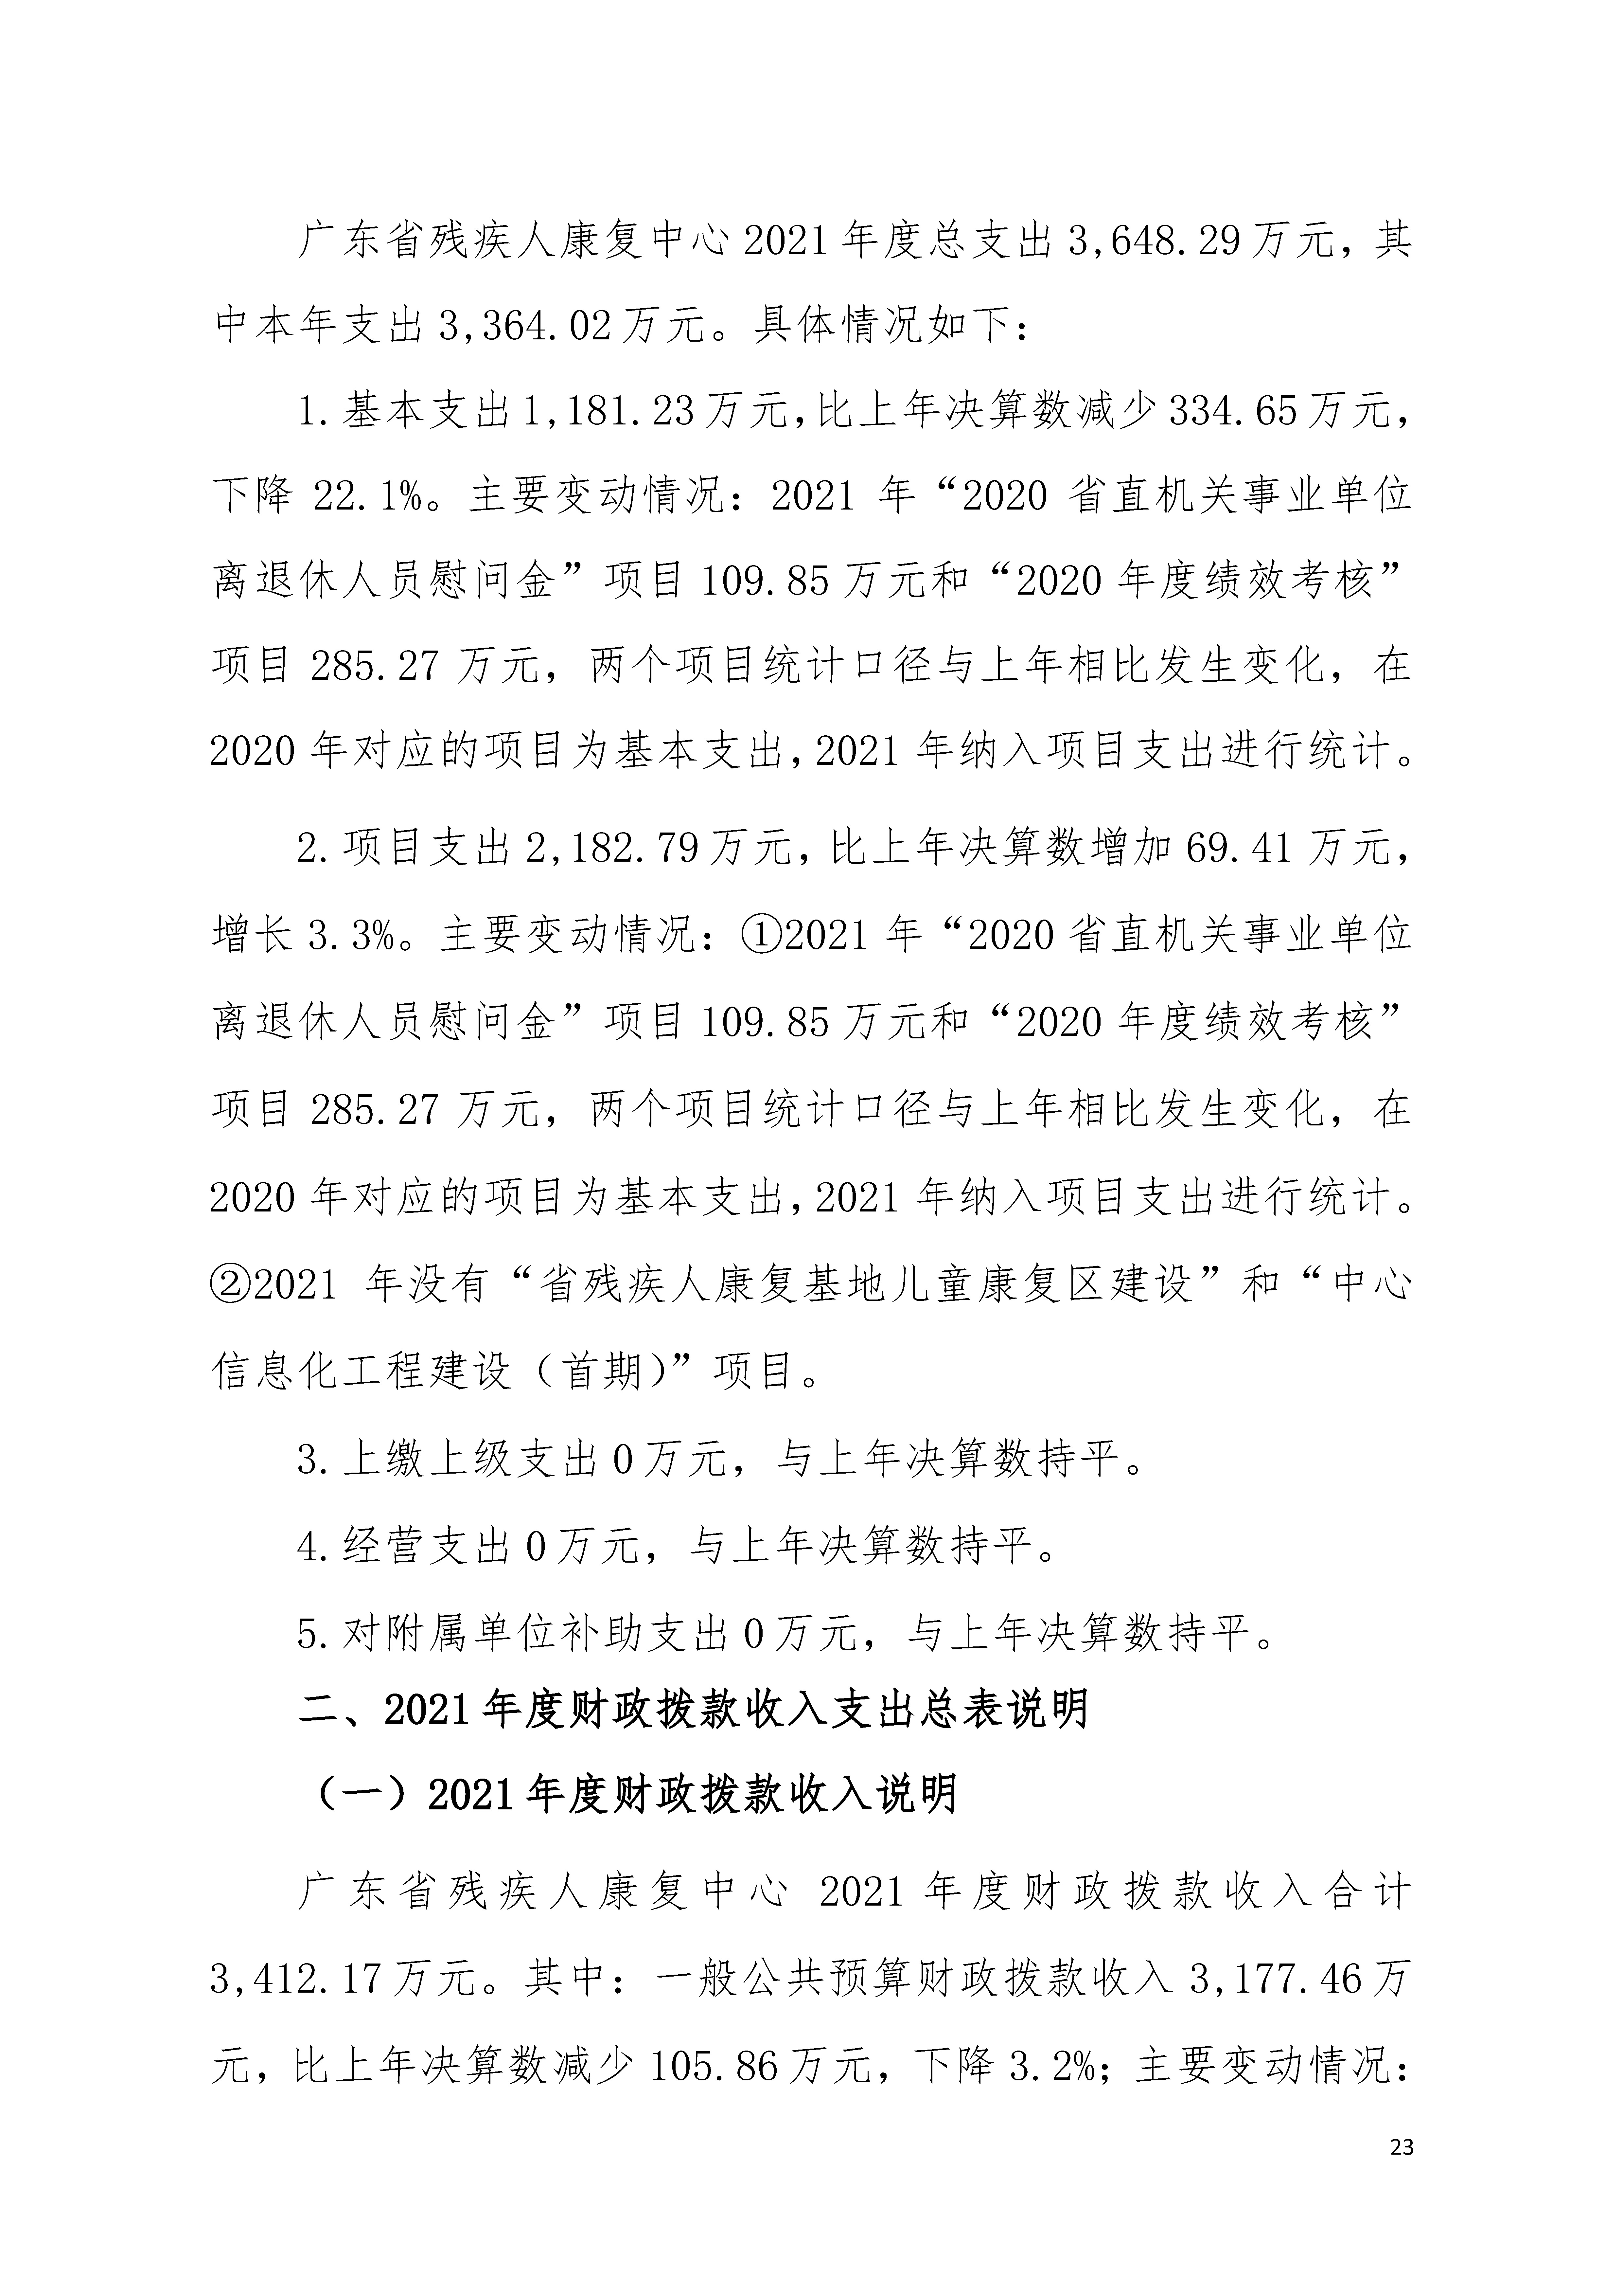 2021年广东省残疾人康复中心部门决算 0629_页面_23.jpg